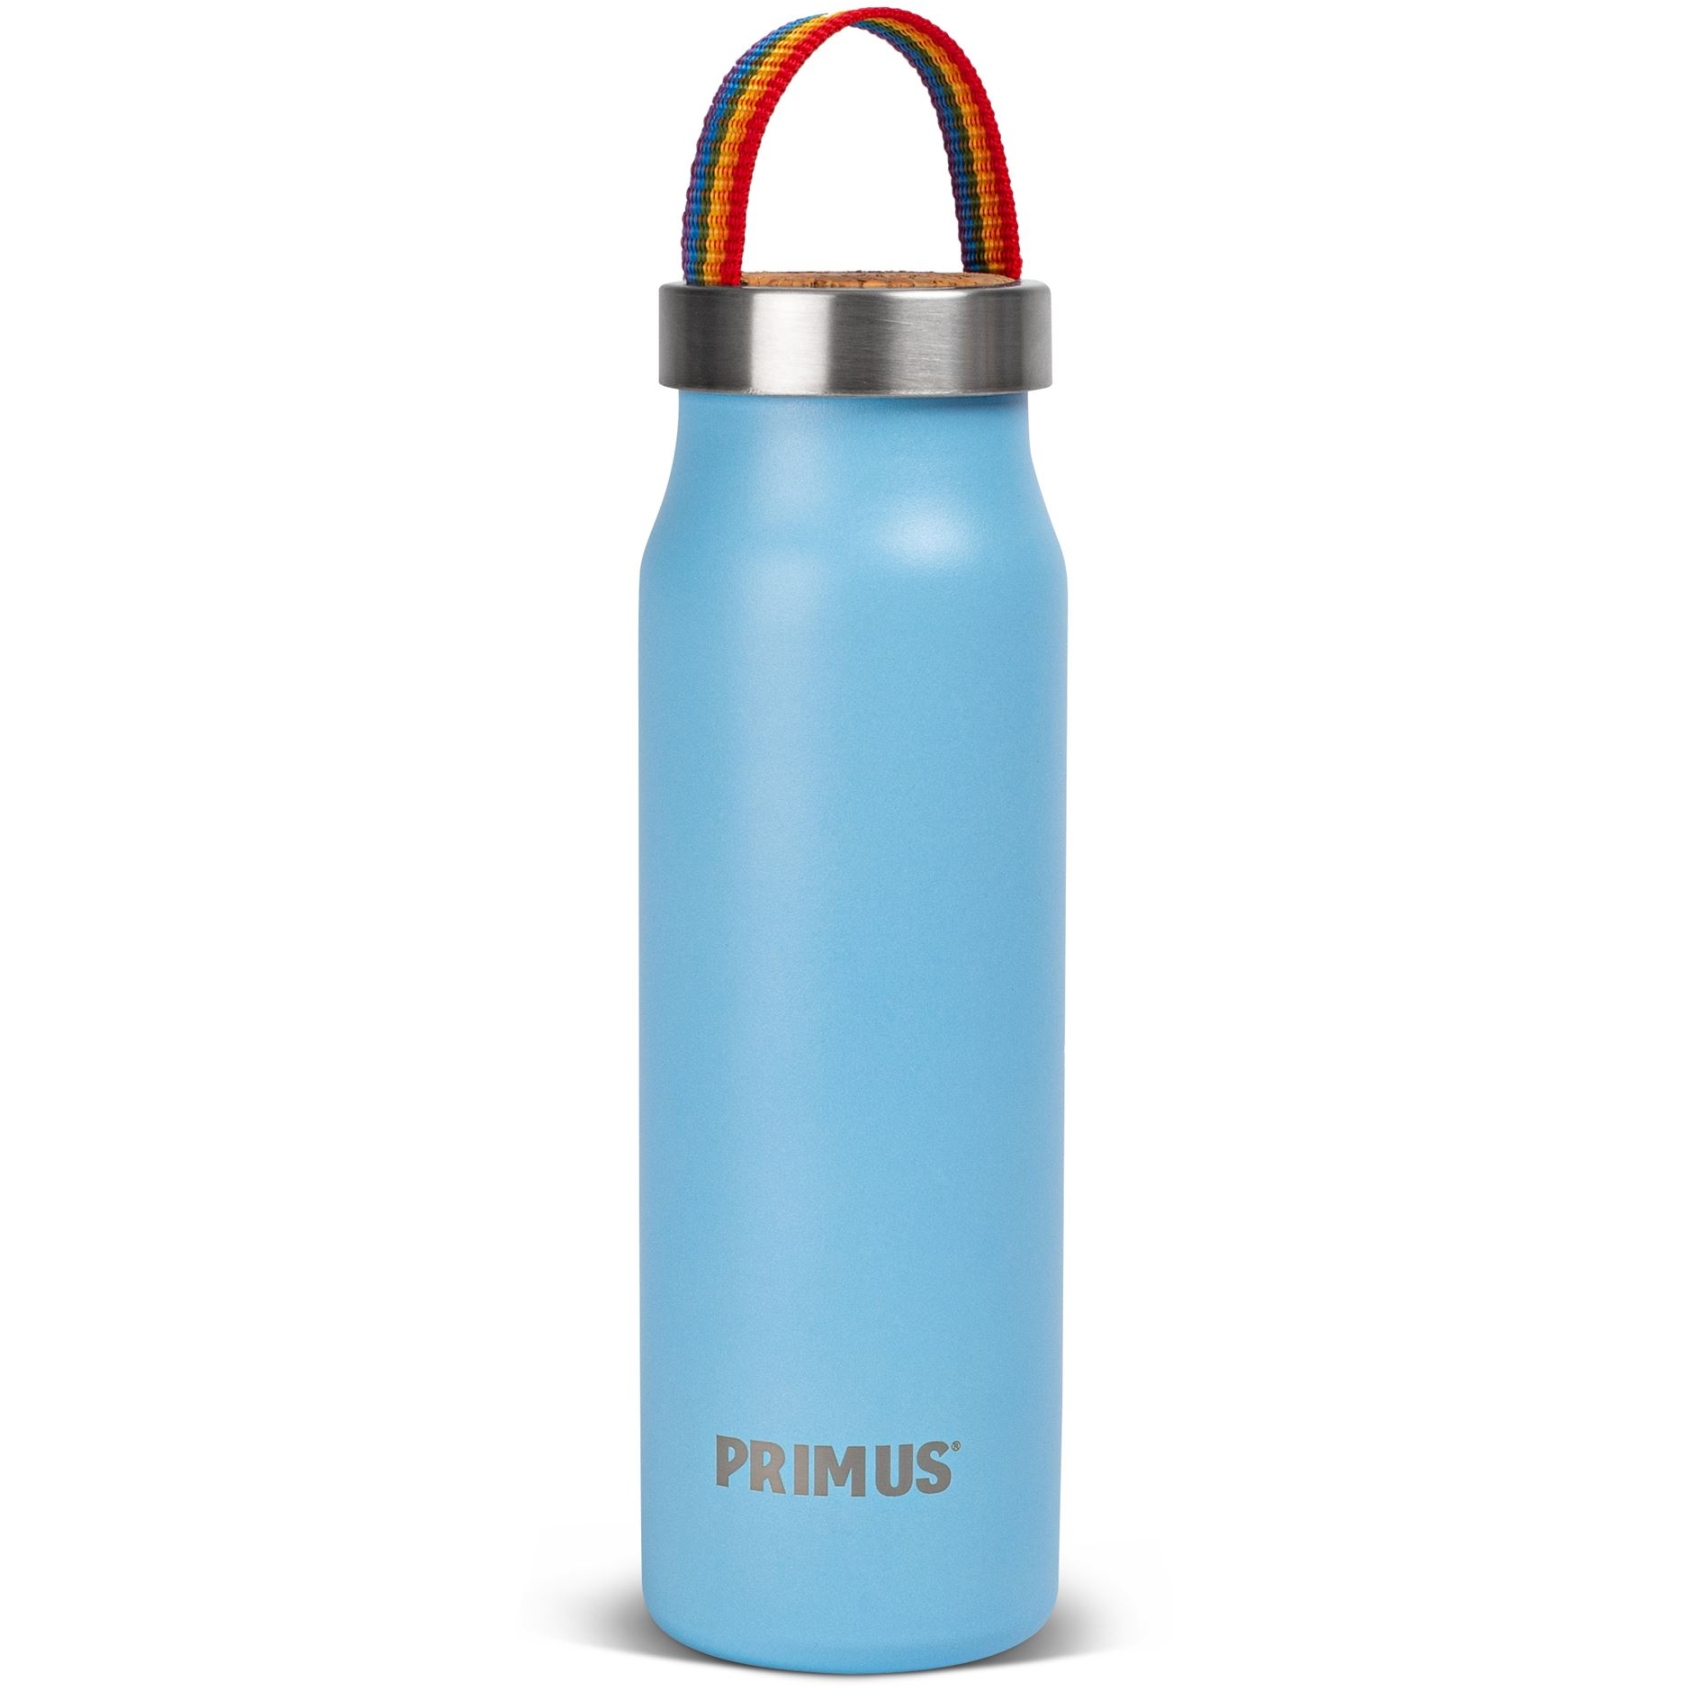 Produktbild von Primus Klunken Vakuum Trinkflasche 0.5 L - rainbow blue